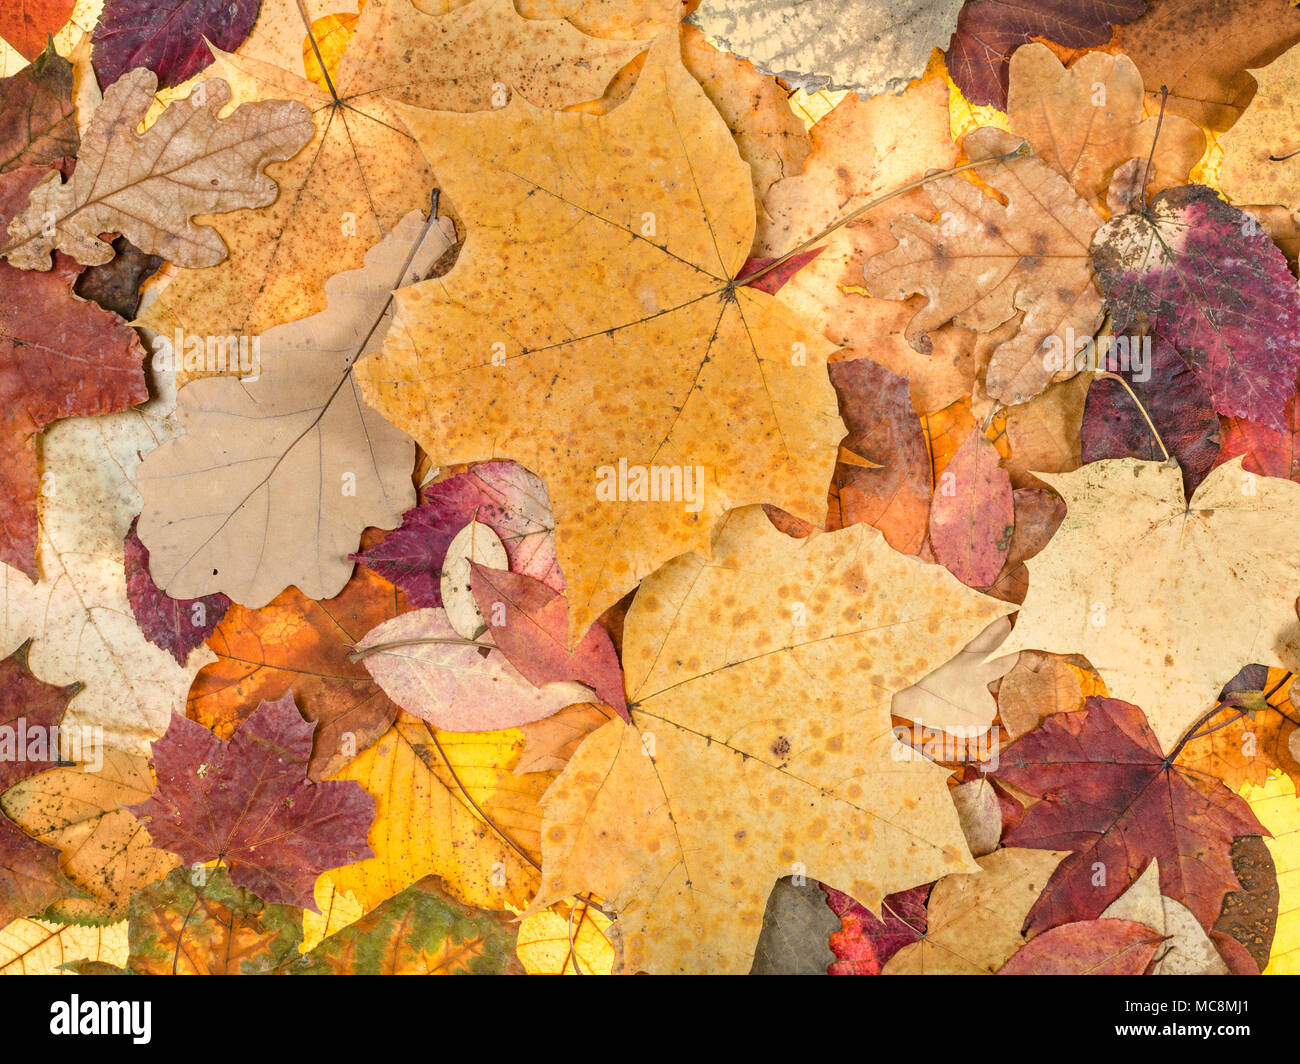 Natürliche Herbst Hintergrund aus verschiedenen Laub von Eiche, Ahorn, Erle, esche Bäume Stockfoto